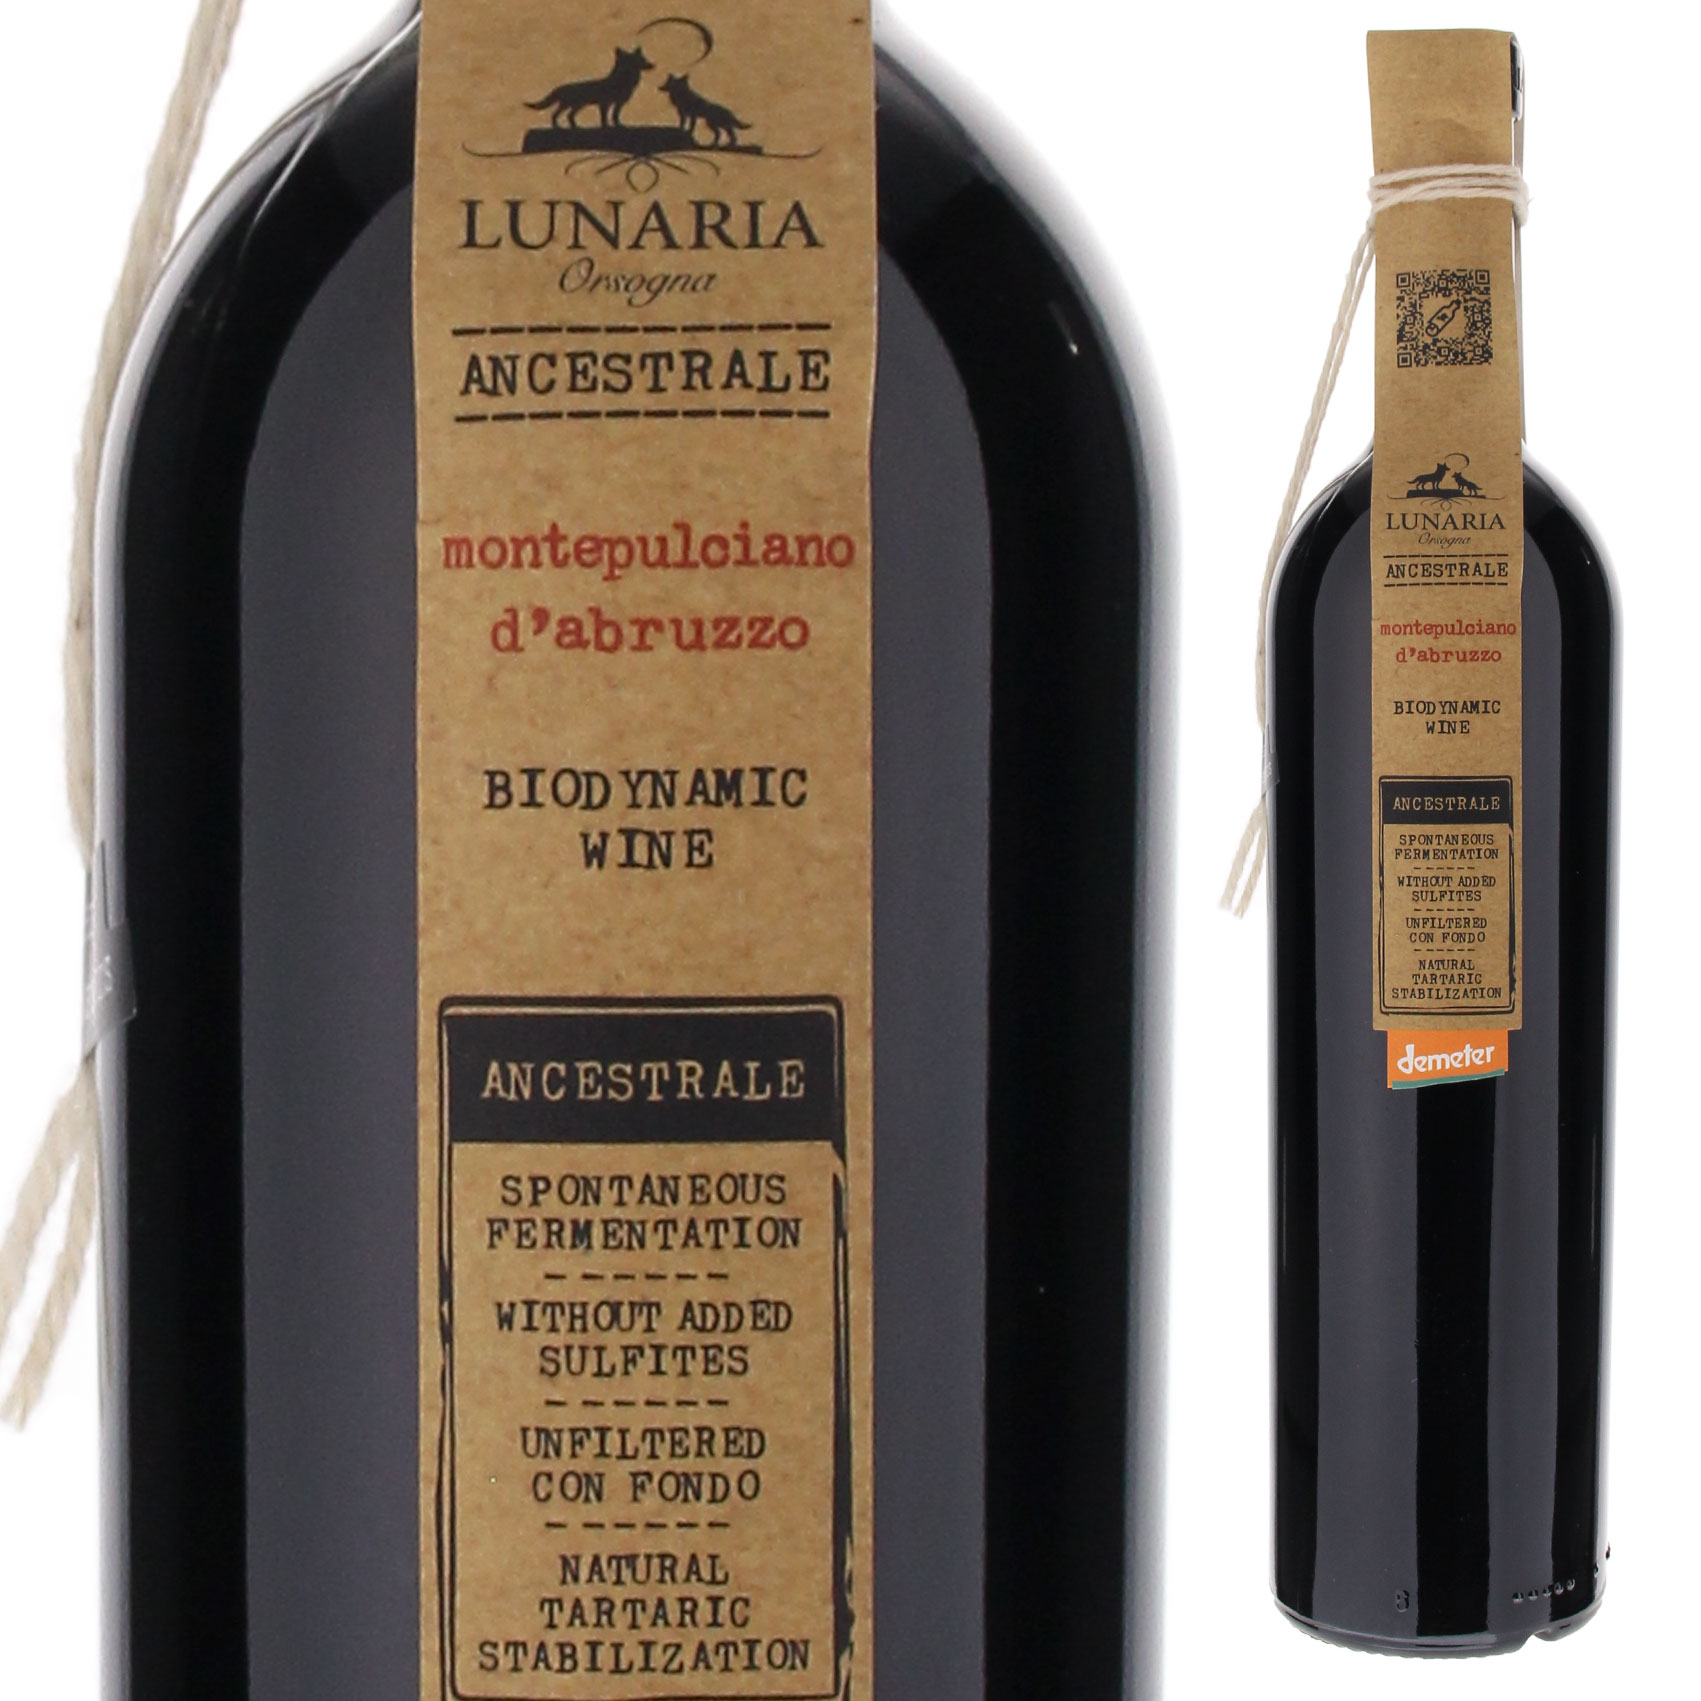 モンテプルチアーノ ダブルッツォ アンセストラル ビオディナミック ナチュレ ワイン 2021 ルナーリア 750ml  [赤] 自然派